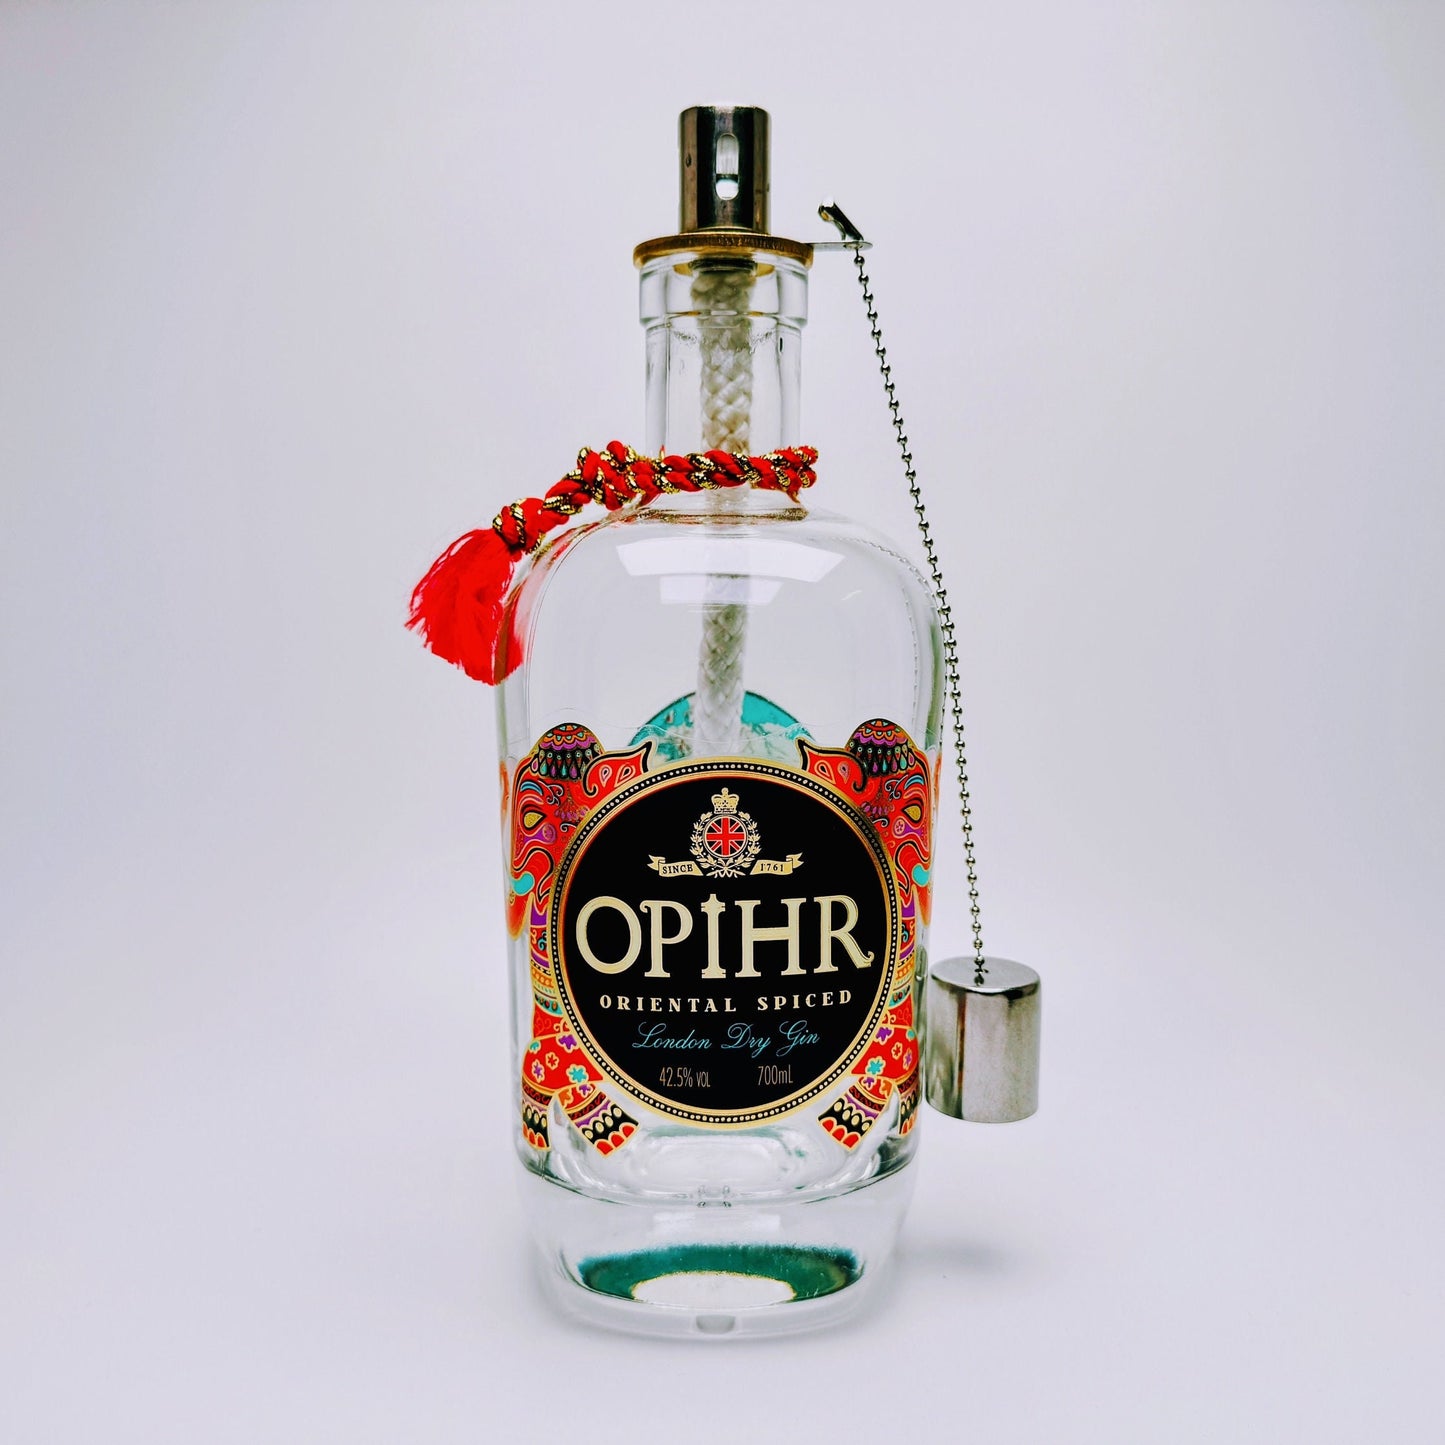 Gin Öllampe "Opihr" | Handgemachte Öllampe aus Opihr Gin Flaschen | Upcycling | Handgefertigt | Individuell | Geschenk | Deko | H:24cm